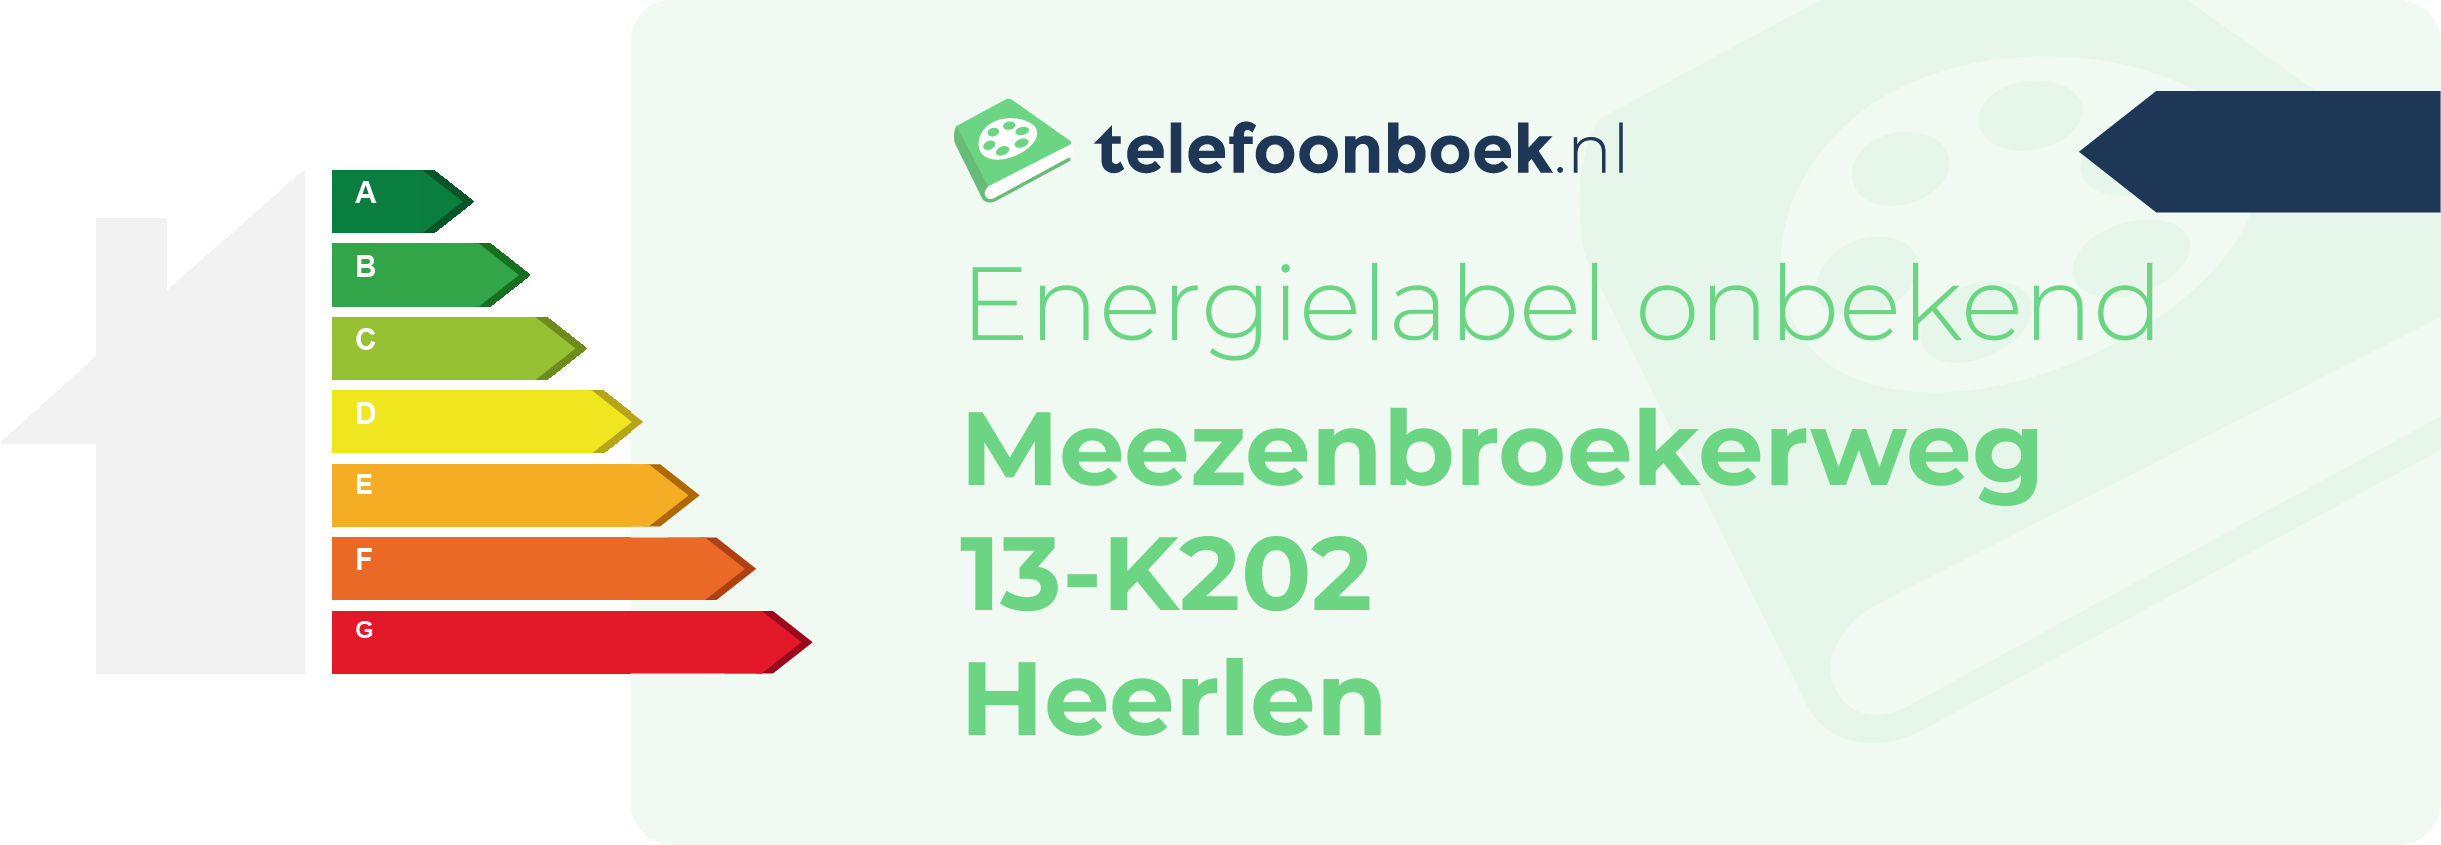 Energielabel Meezenbroekerweg 13-K202 Heerlen